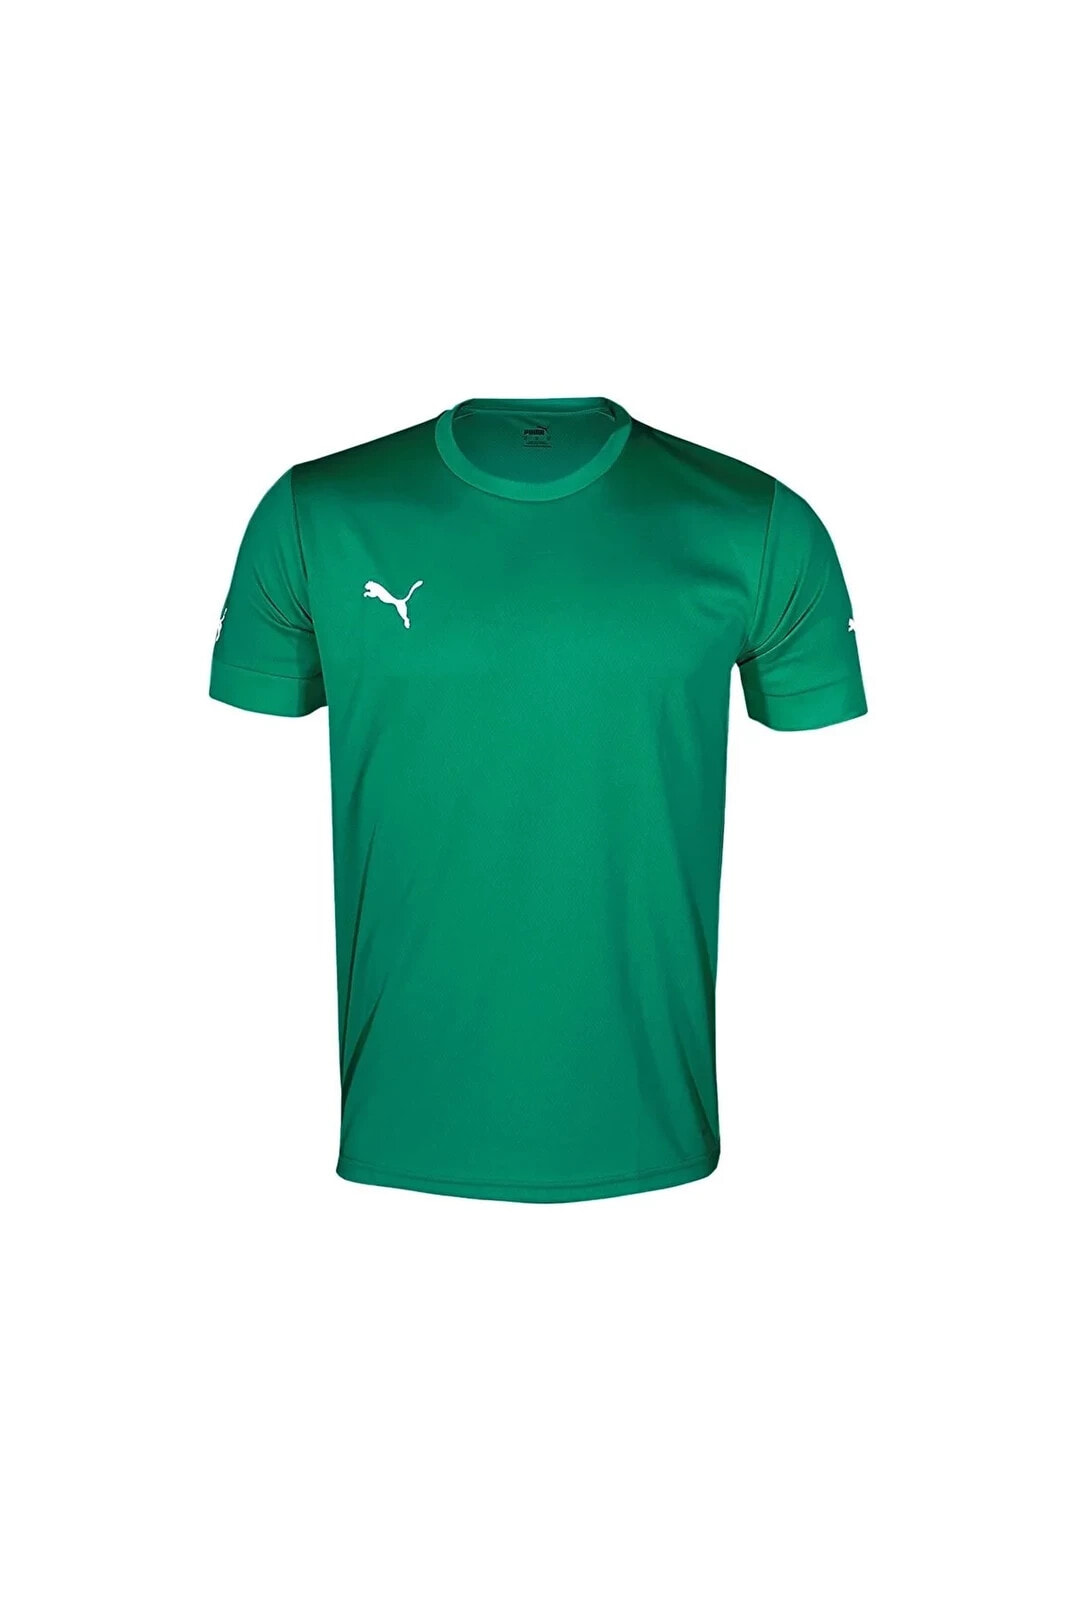 Smu Turkey Jersey Erkek Futbol Forması 77349805 Yeşil